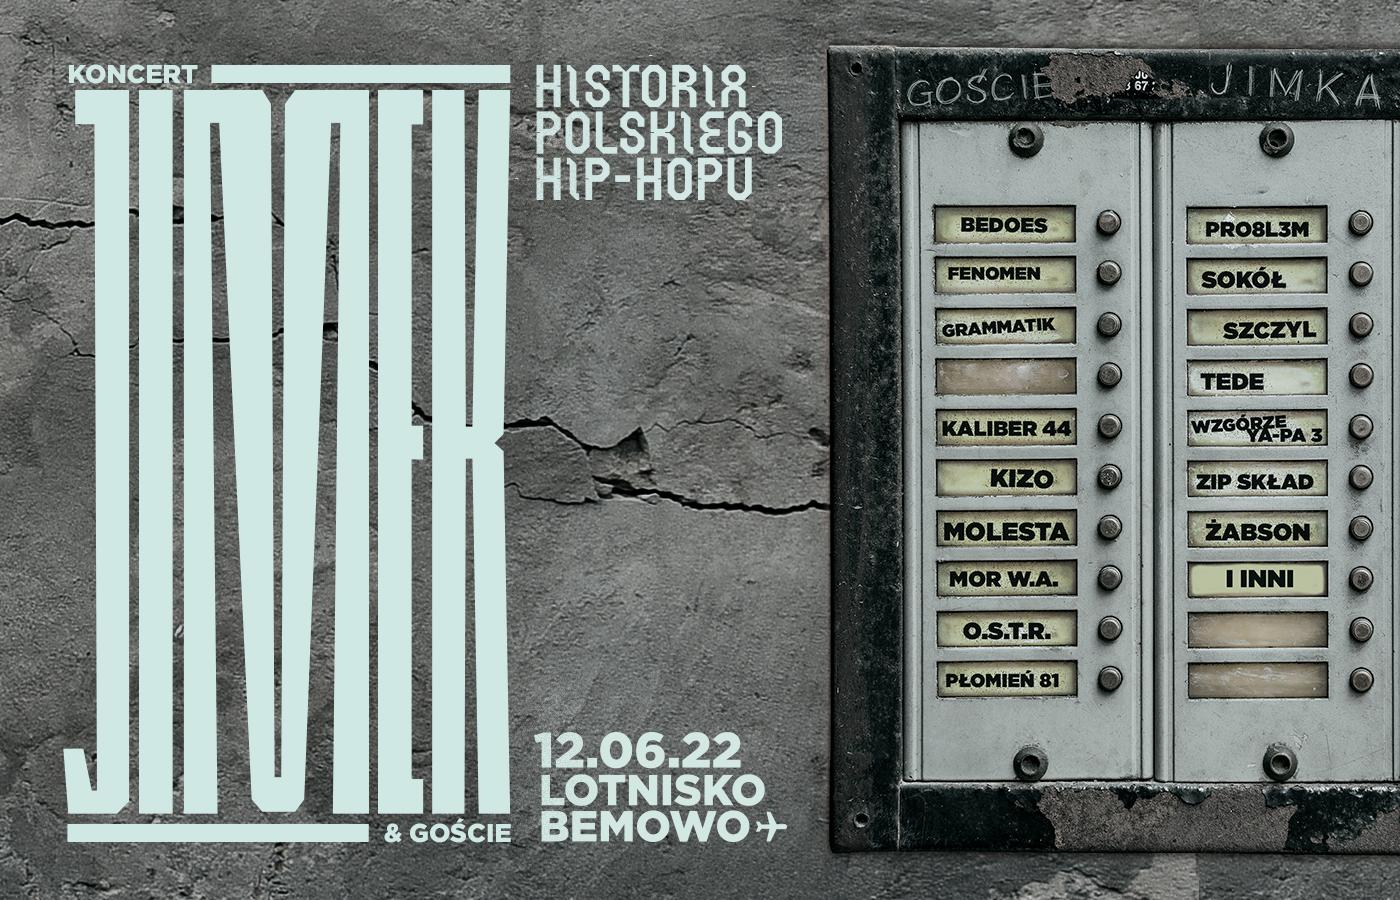 Na koncercie Historia Polskiego Hip-Hopu na Lotnisku Bemowo wystąpią m.in. m.in. Tede, O.S.T.R, PRO8L3M, Bedoes, Sokół, a nawet legendarny Kaliber 44 i kultowy skład Molesta.